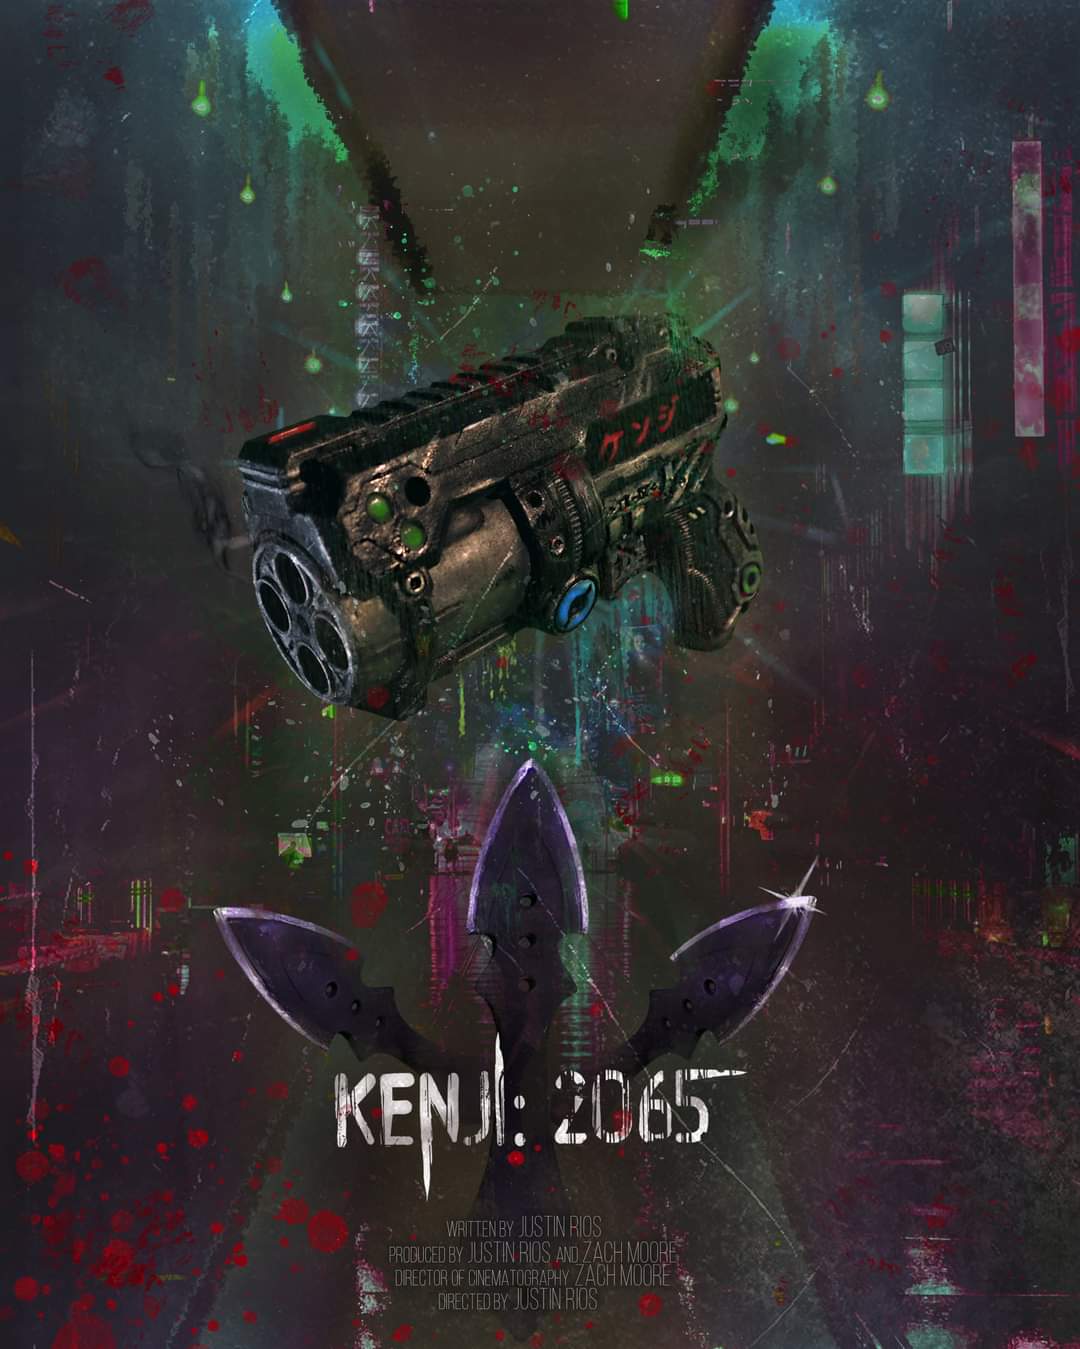 Kenji:2065: The Return of the Kuroi Clan